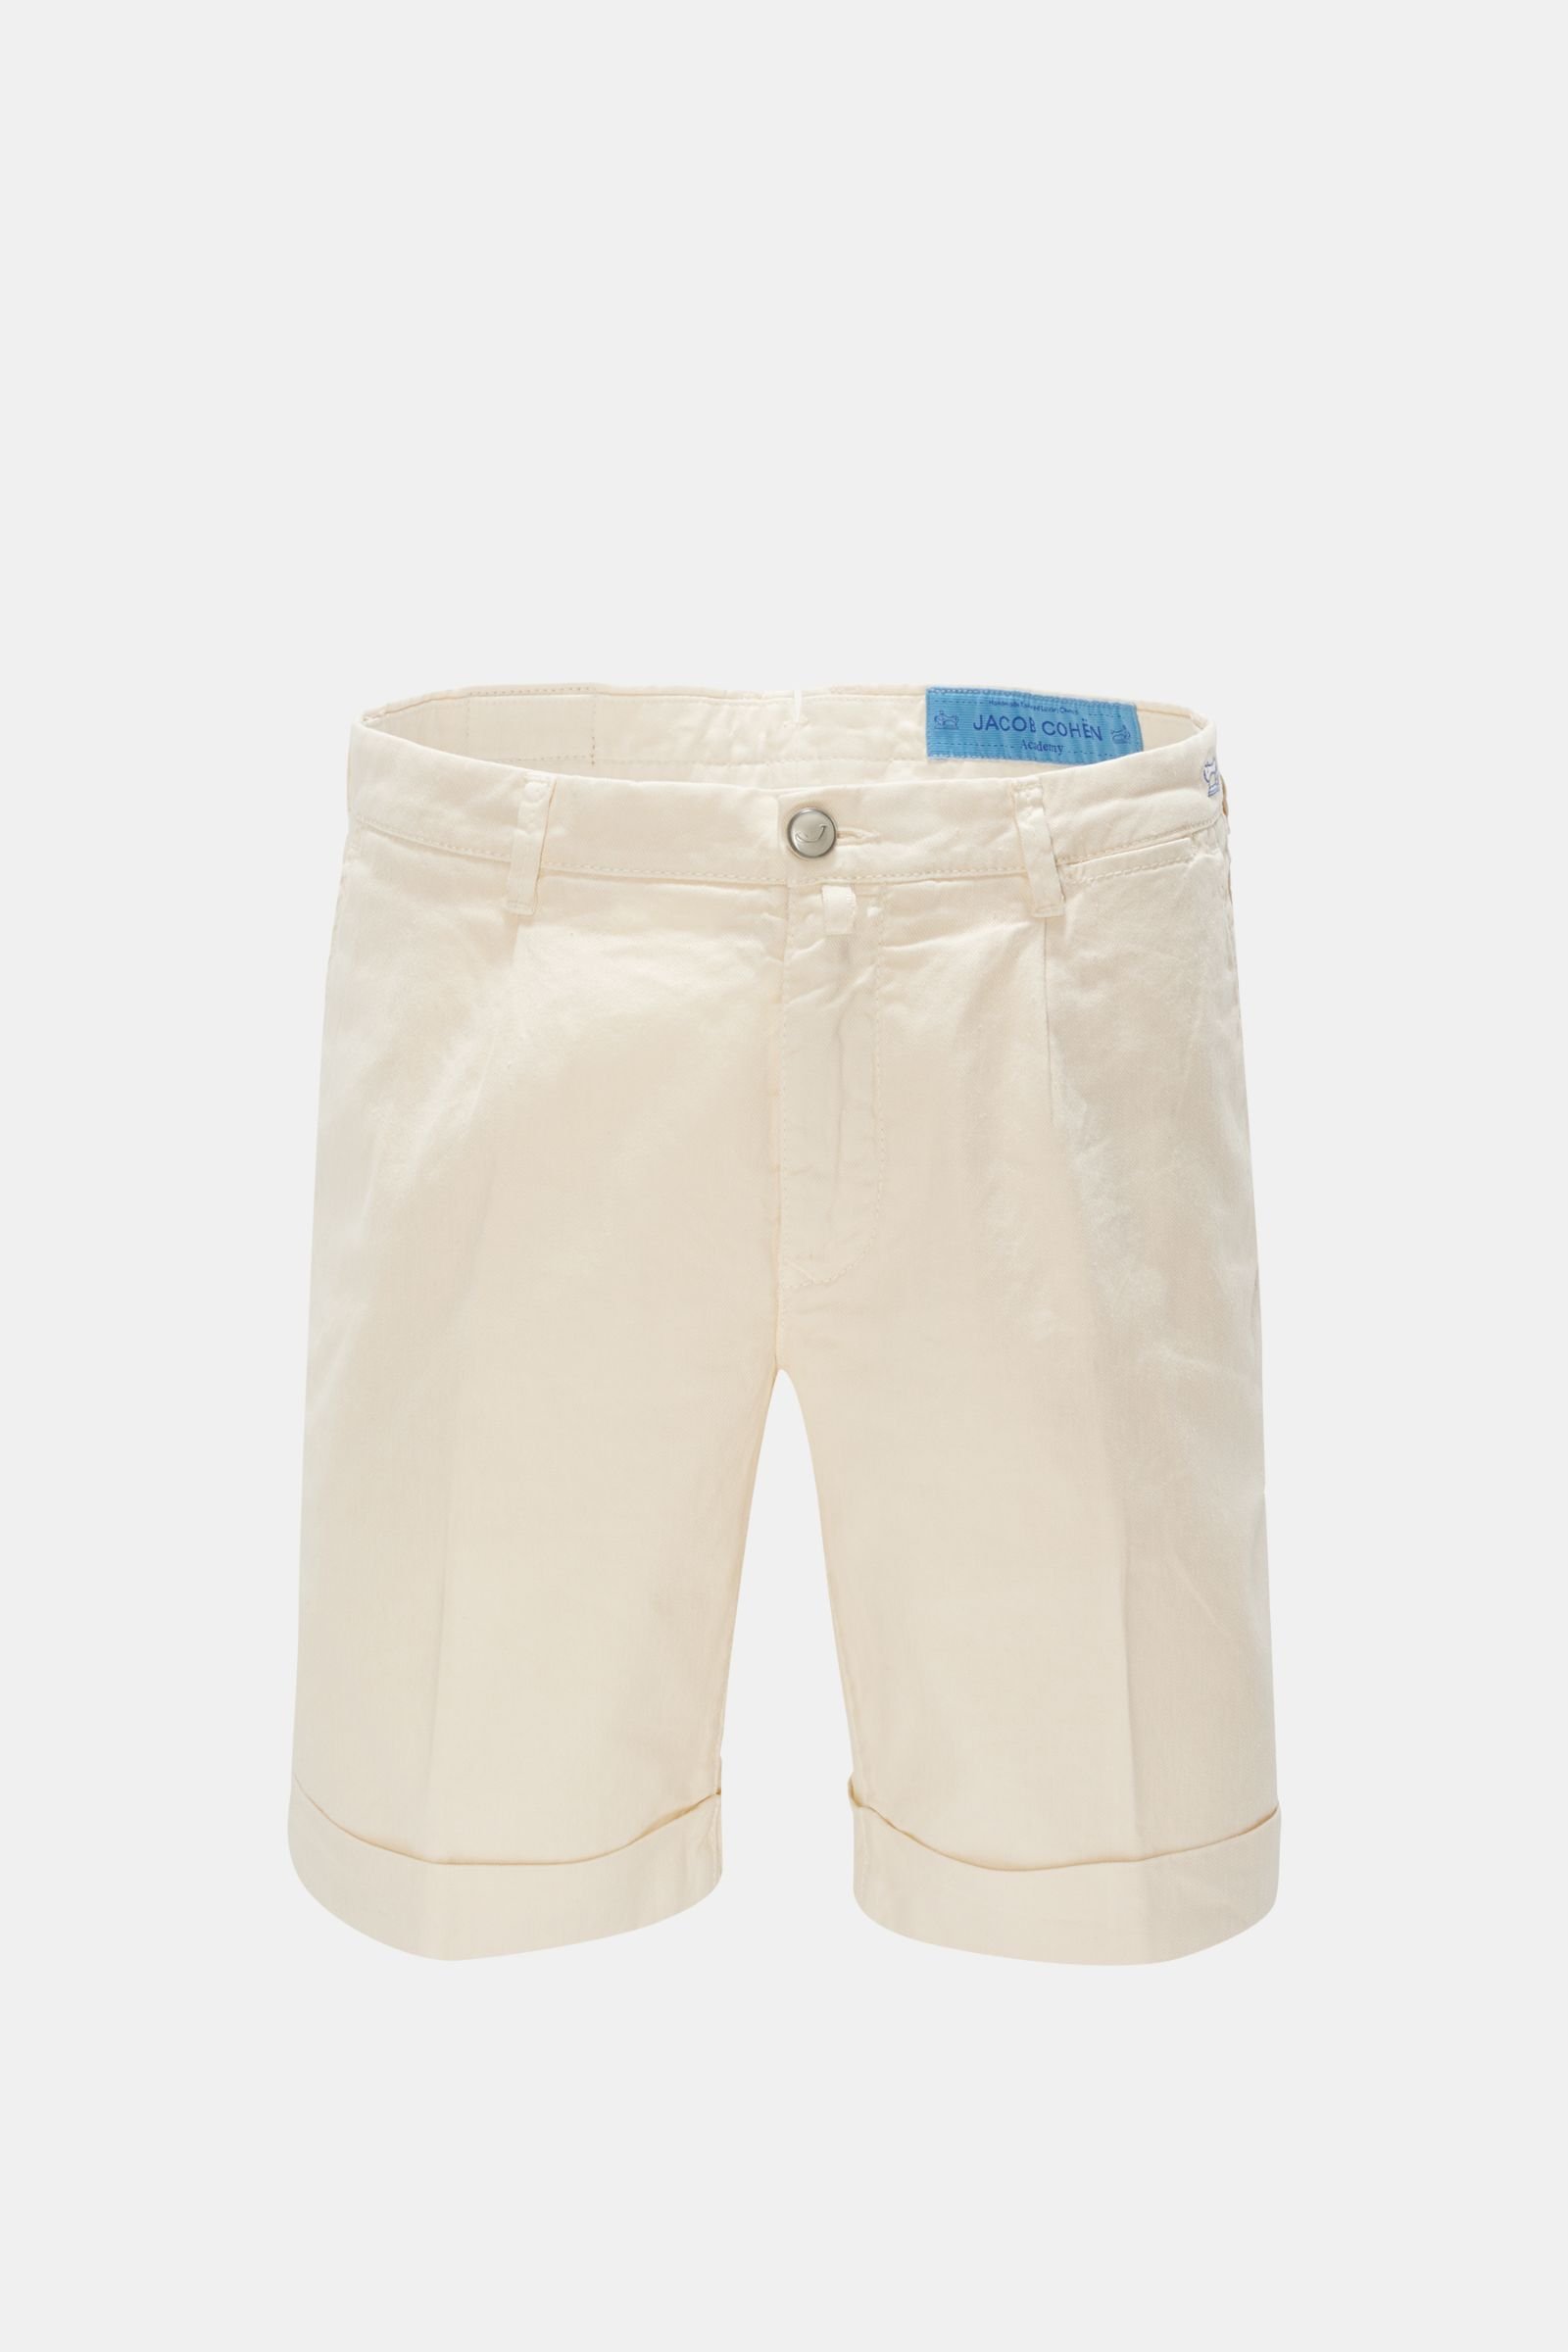 Bermuda shorts 'Tropez Comfort Slim Fit' cream